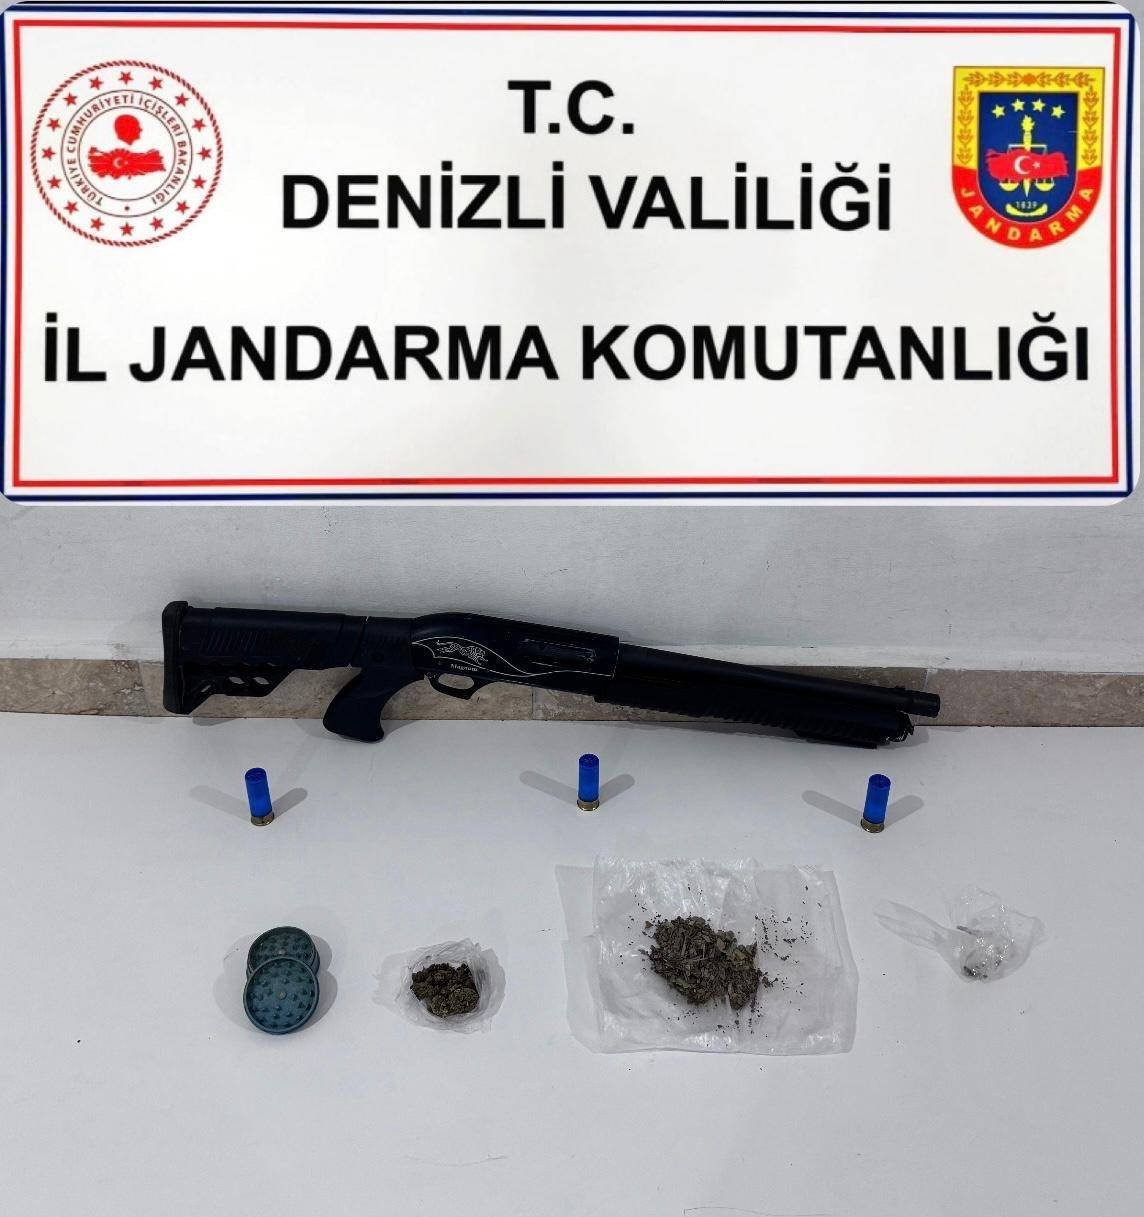 Denizli jandarmasından uyuşturucu tacirleri 3 ilçede eş zamanlı operasyon: 11 gözaltı
